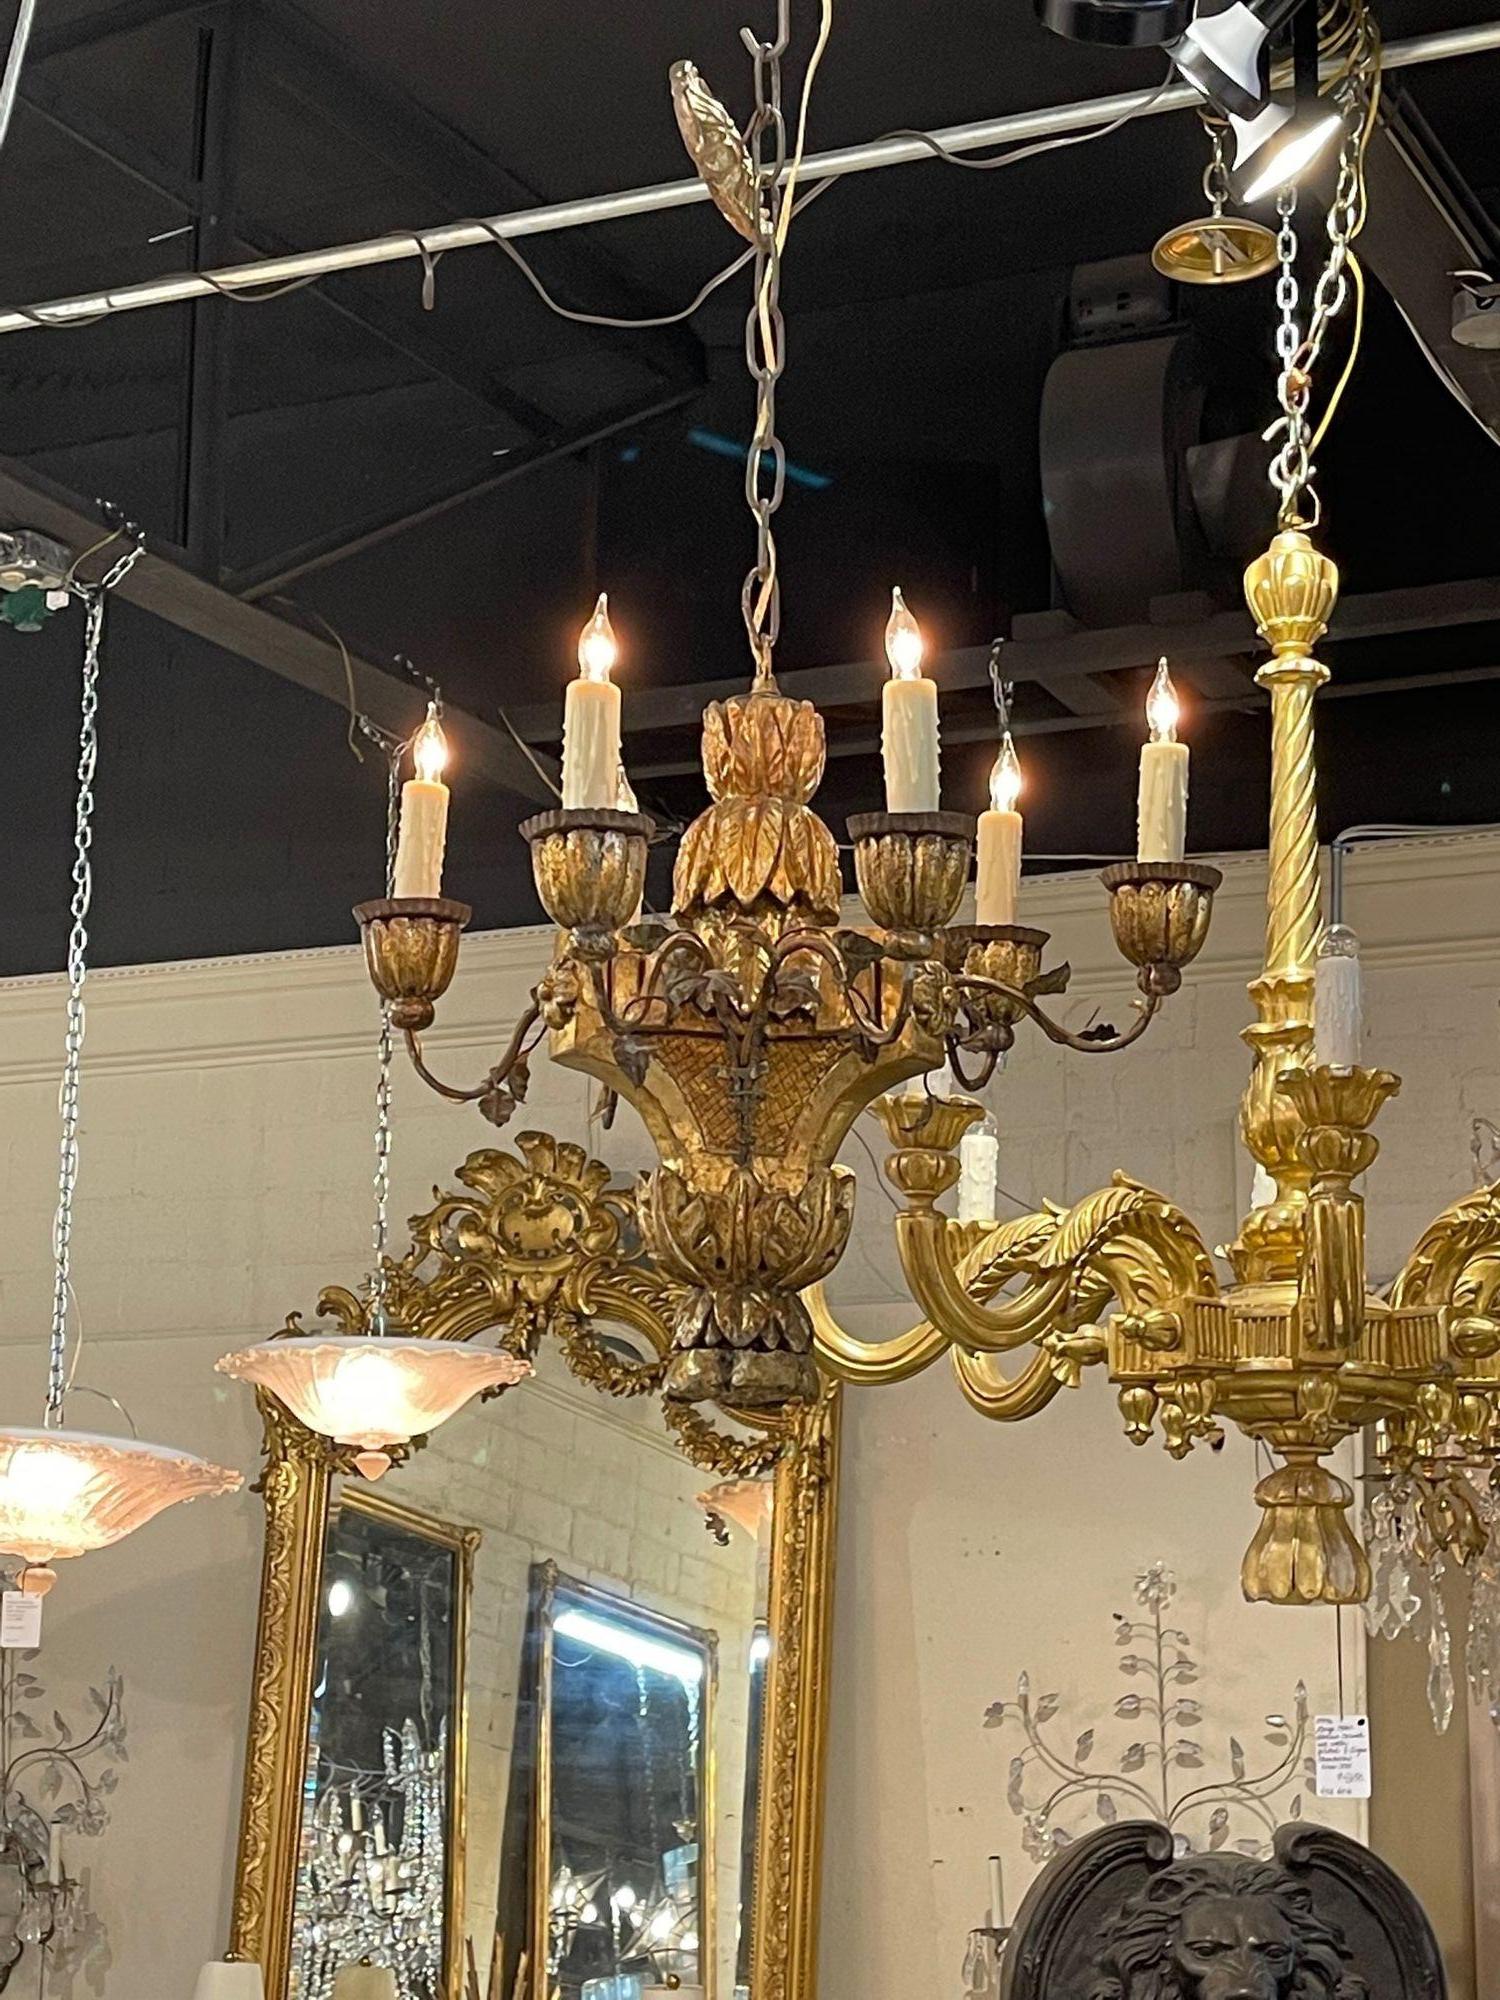 Lustre à 6 lumières en bois sculpté et doré italien du 18e siècle. Circa 1780. Le lustre a été recâblé par des professionnels, nettoyé et est prêt à être suspendu. Comprend une chaîne et un auvent assortis.